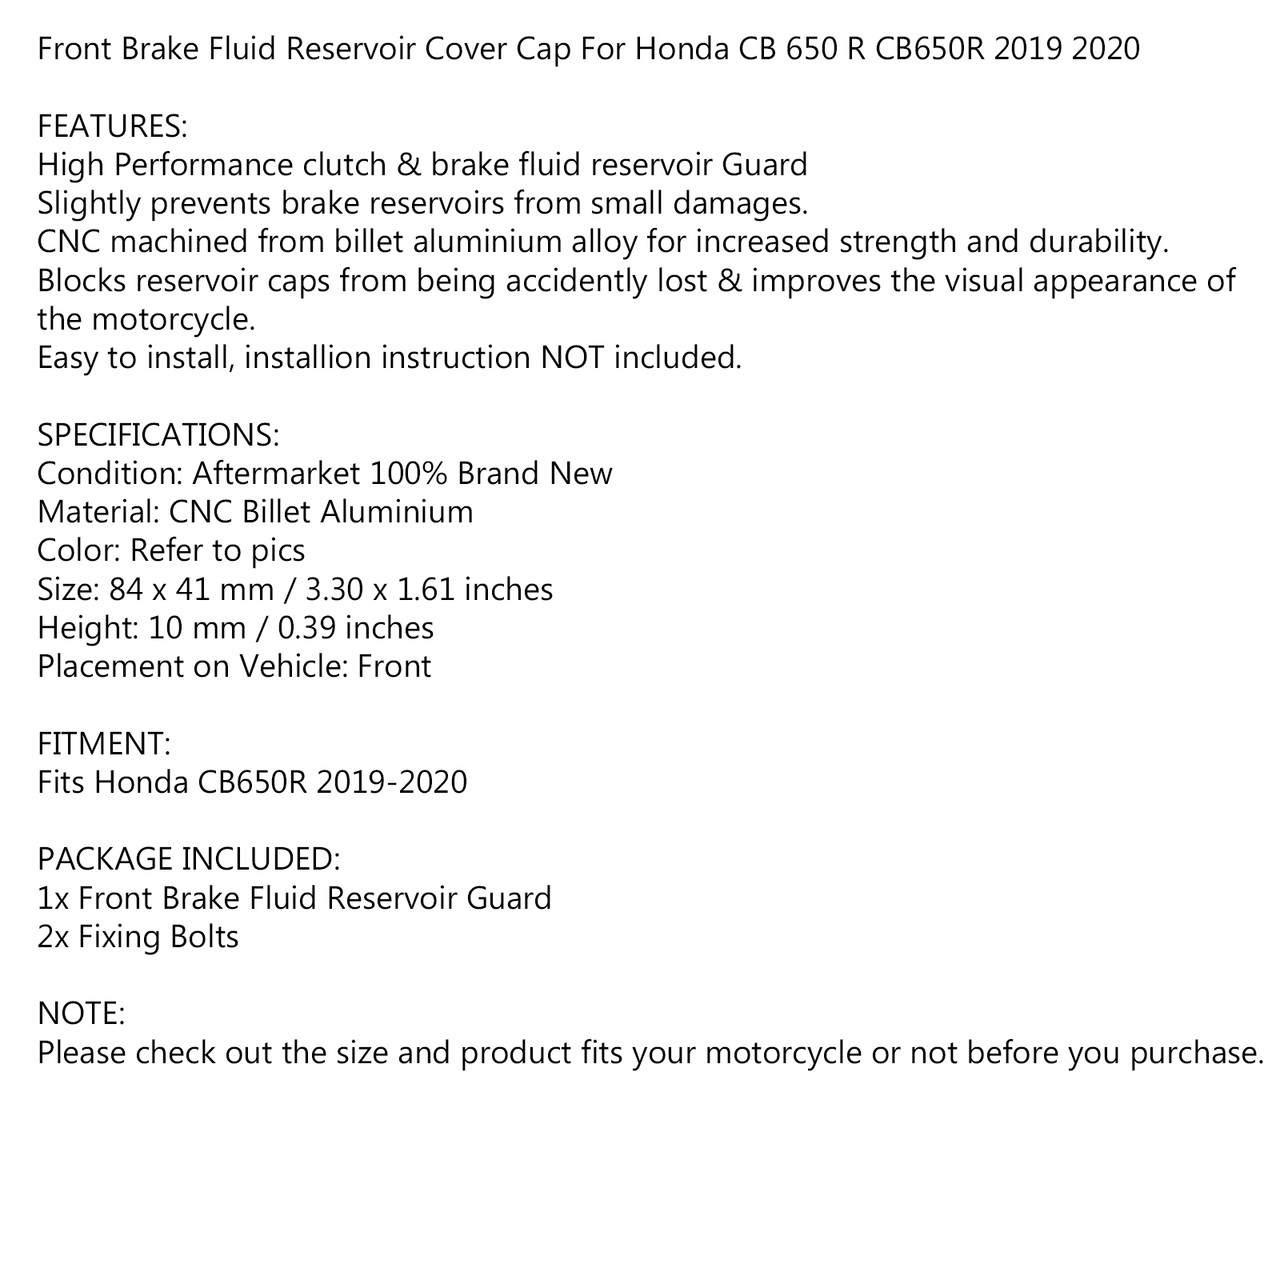 Front Brake Fluid Reservoir Cover Cap for Honda CB650R CB 650 R 2019-2020 Black